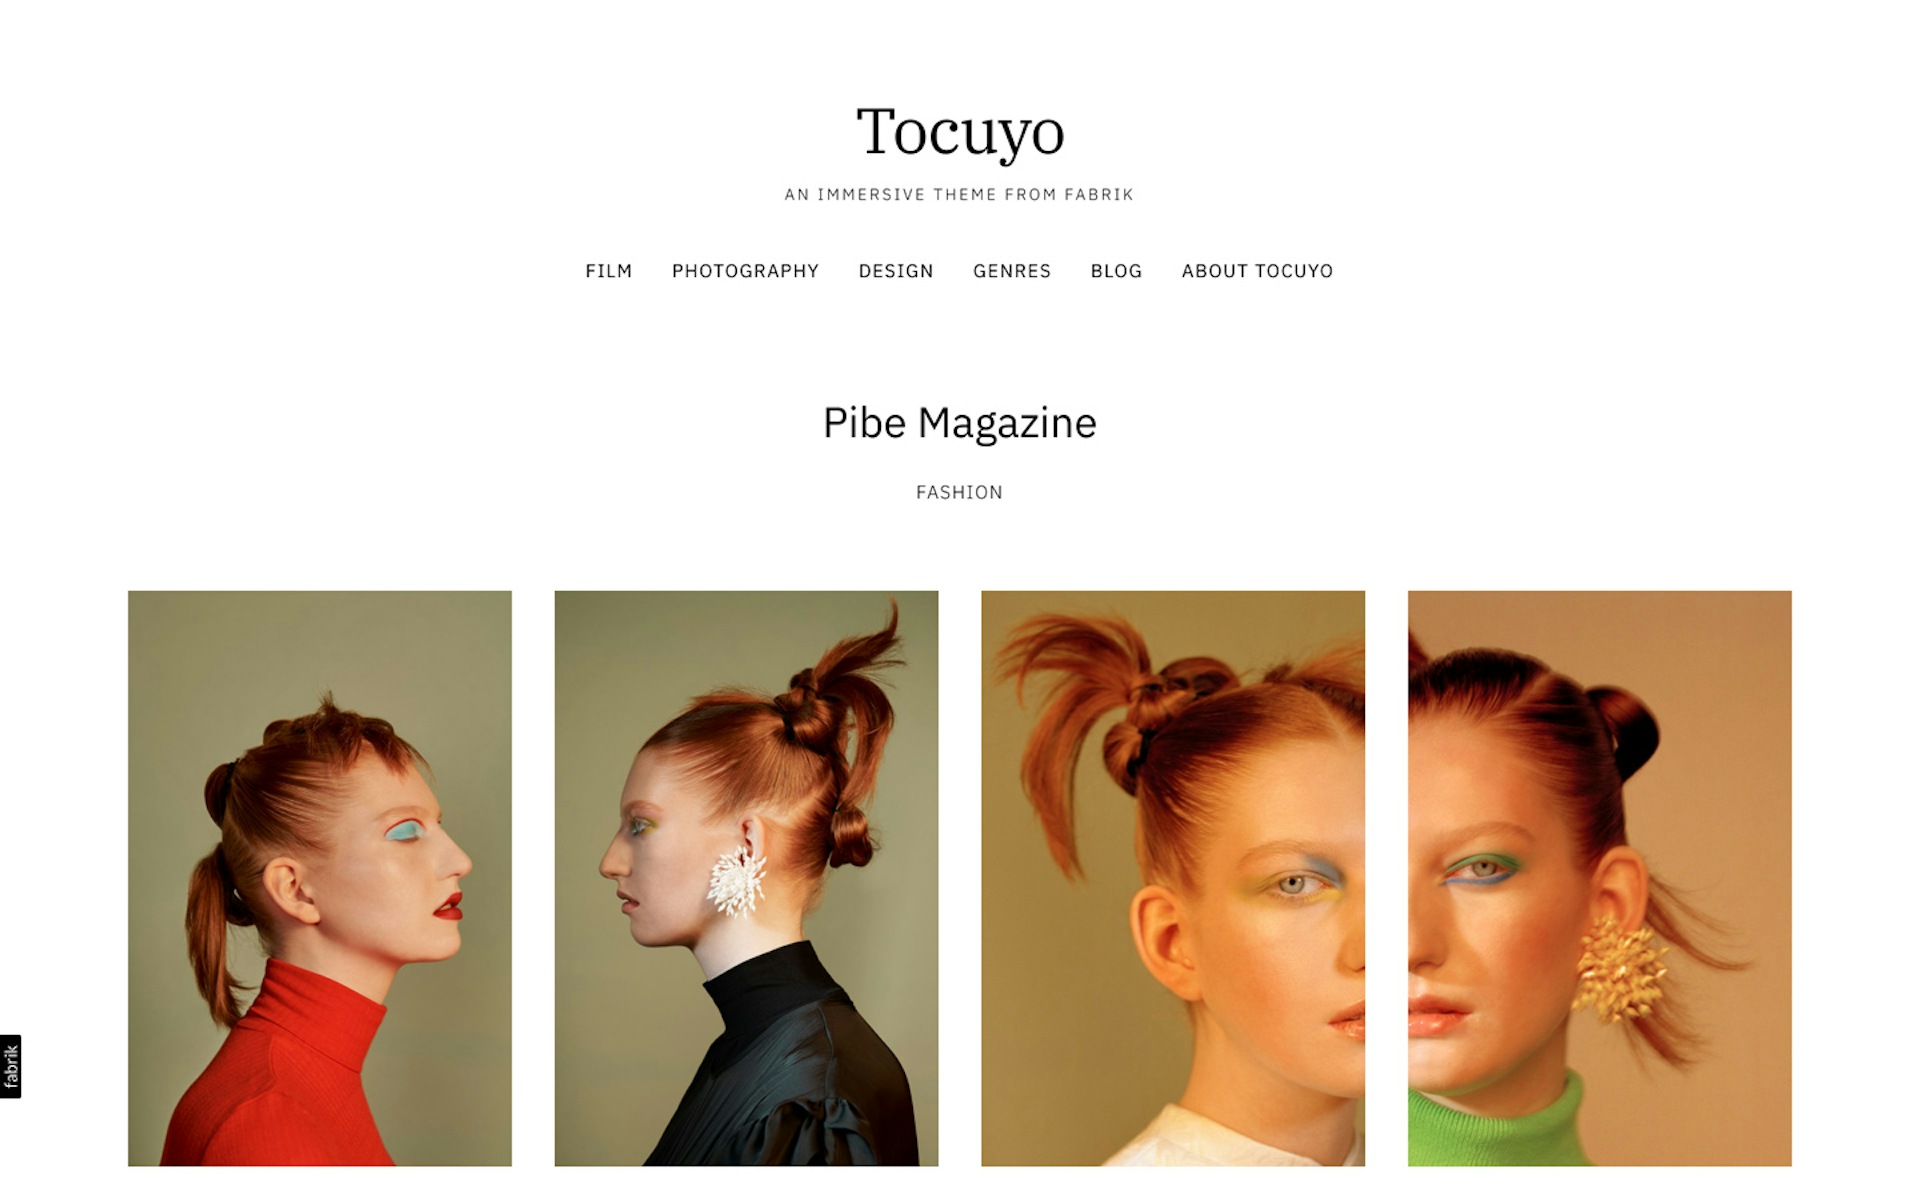 Tocuyo theme for Fabrik portfolio website